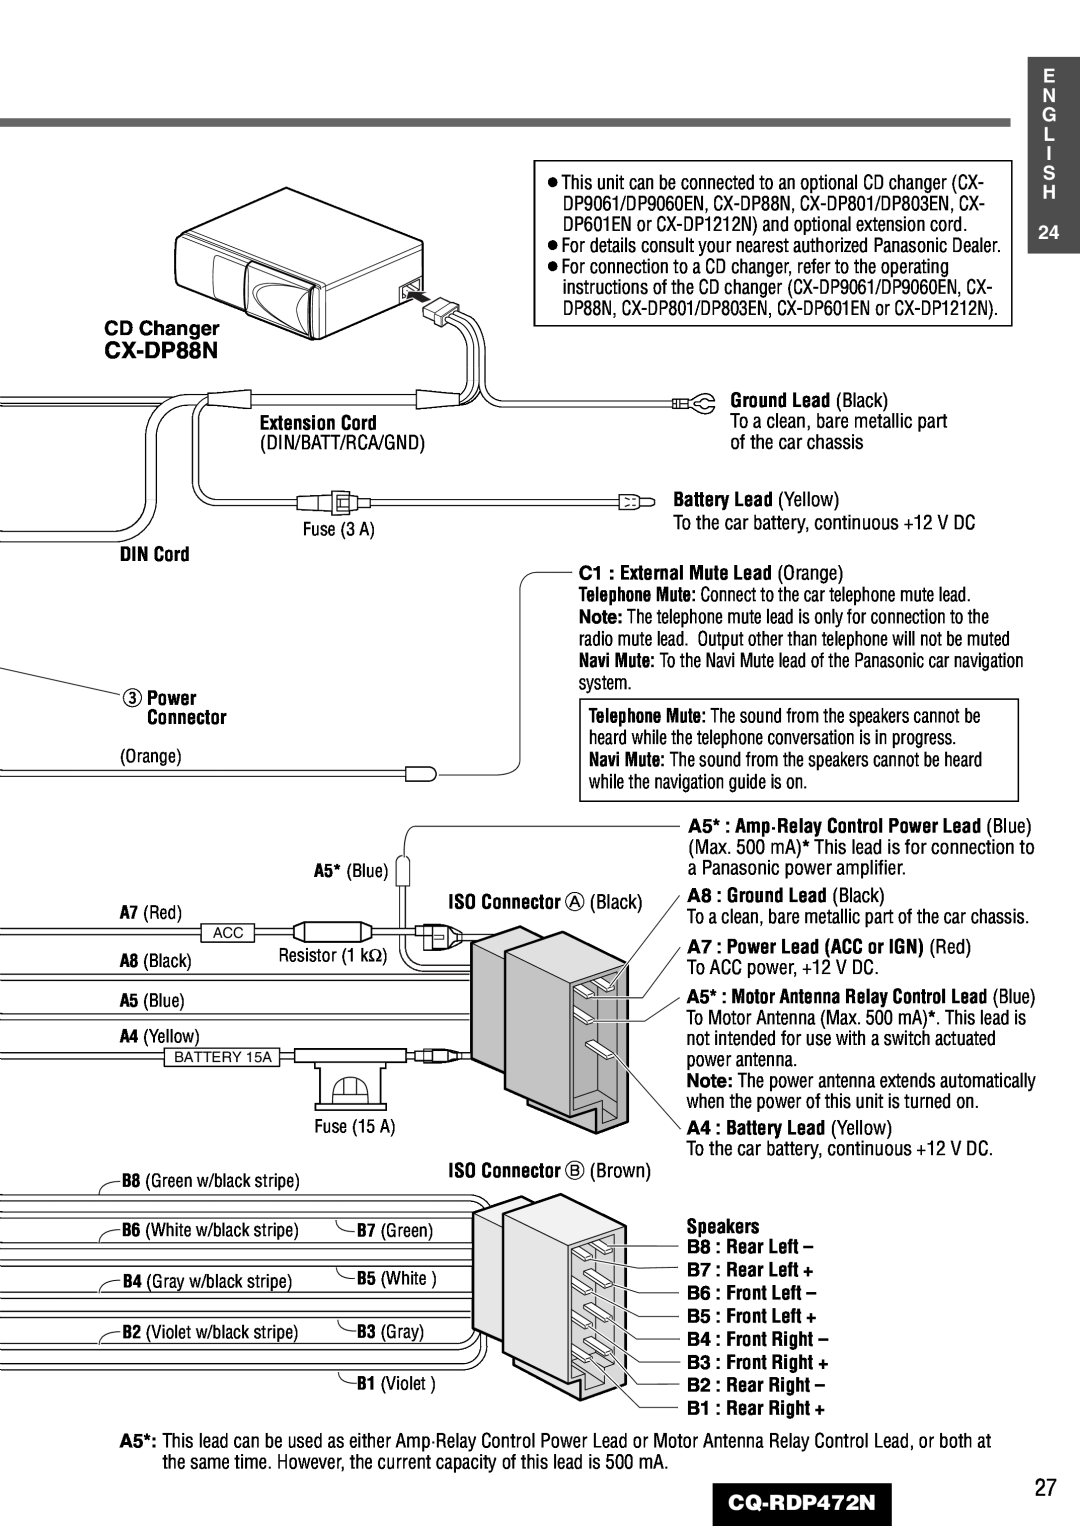 Panasonic CQ-RDP472N manual CX-DP88N, CD Changer 